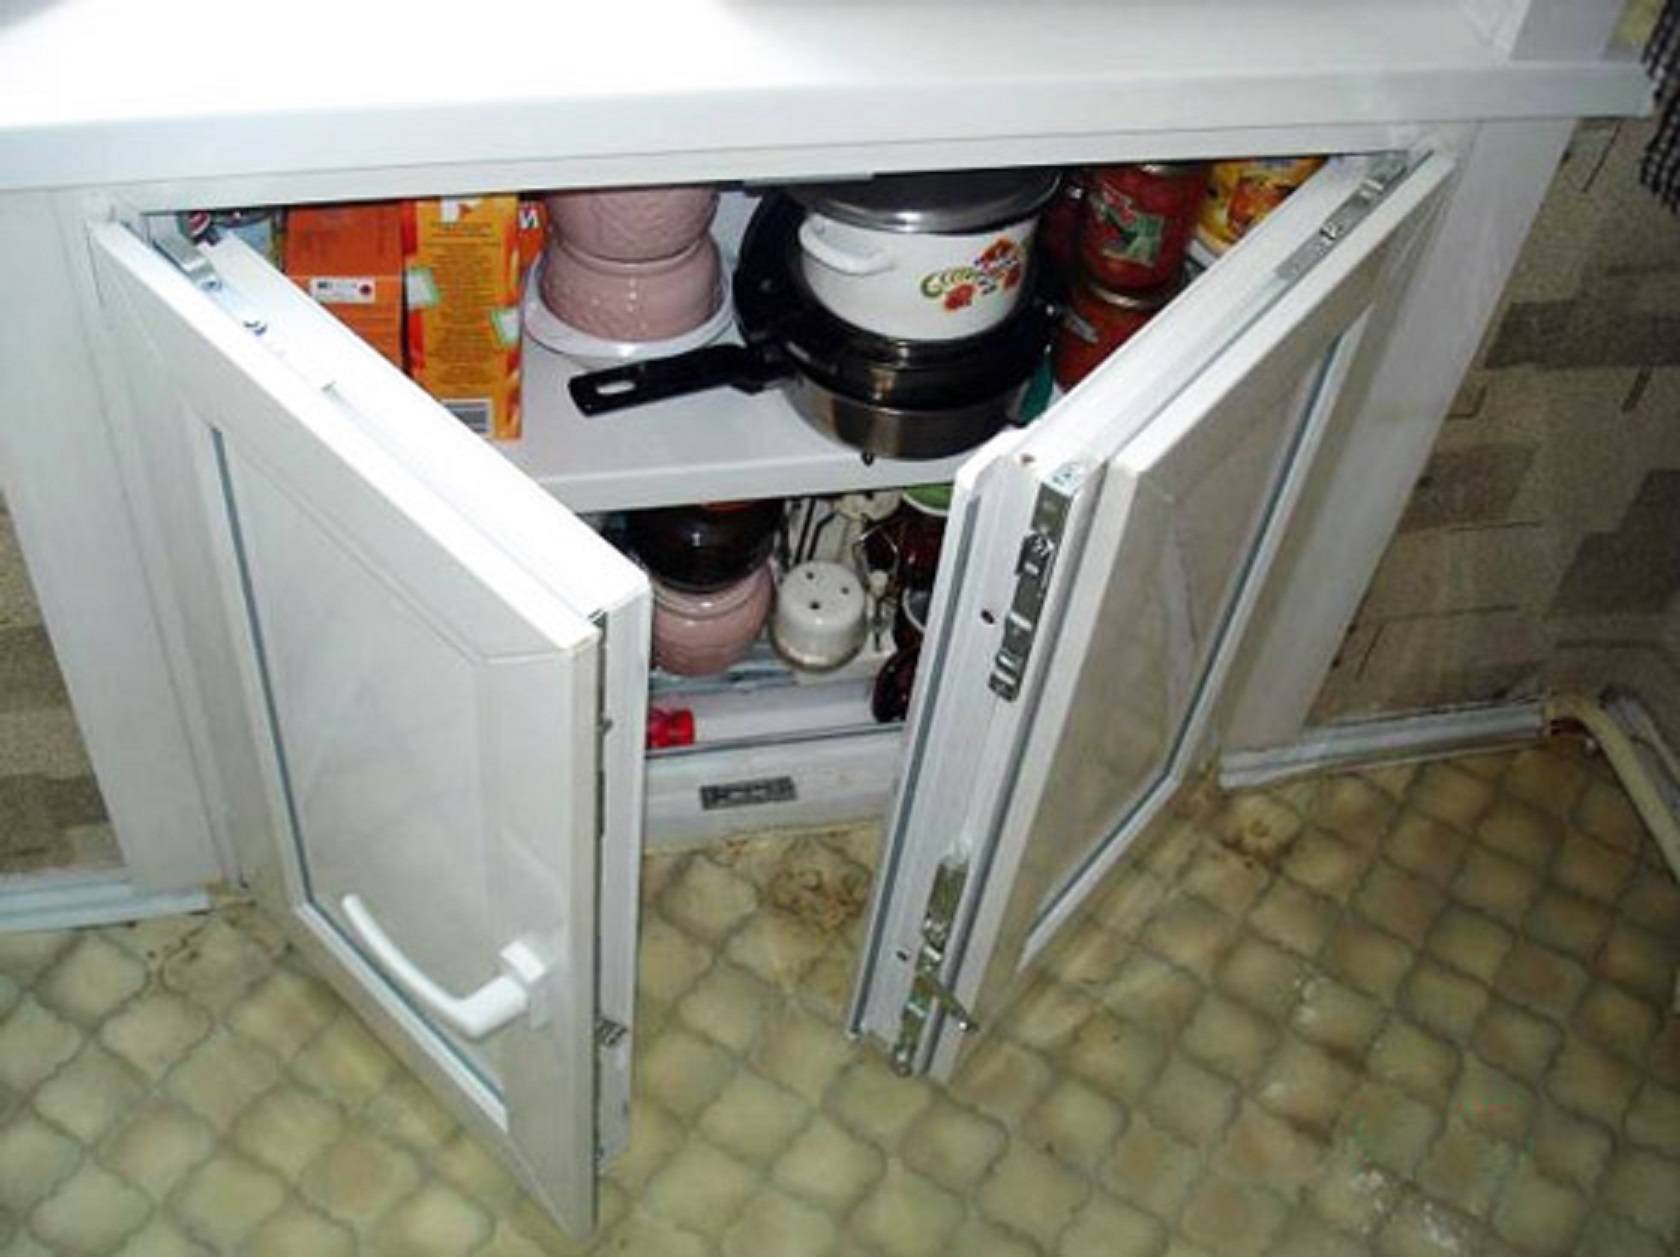 Хрущевский холодильник» на кухне: улучшение или замена?